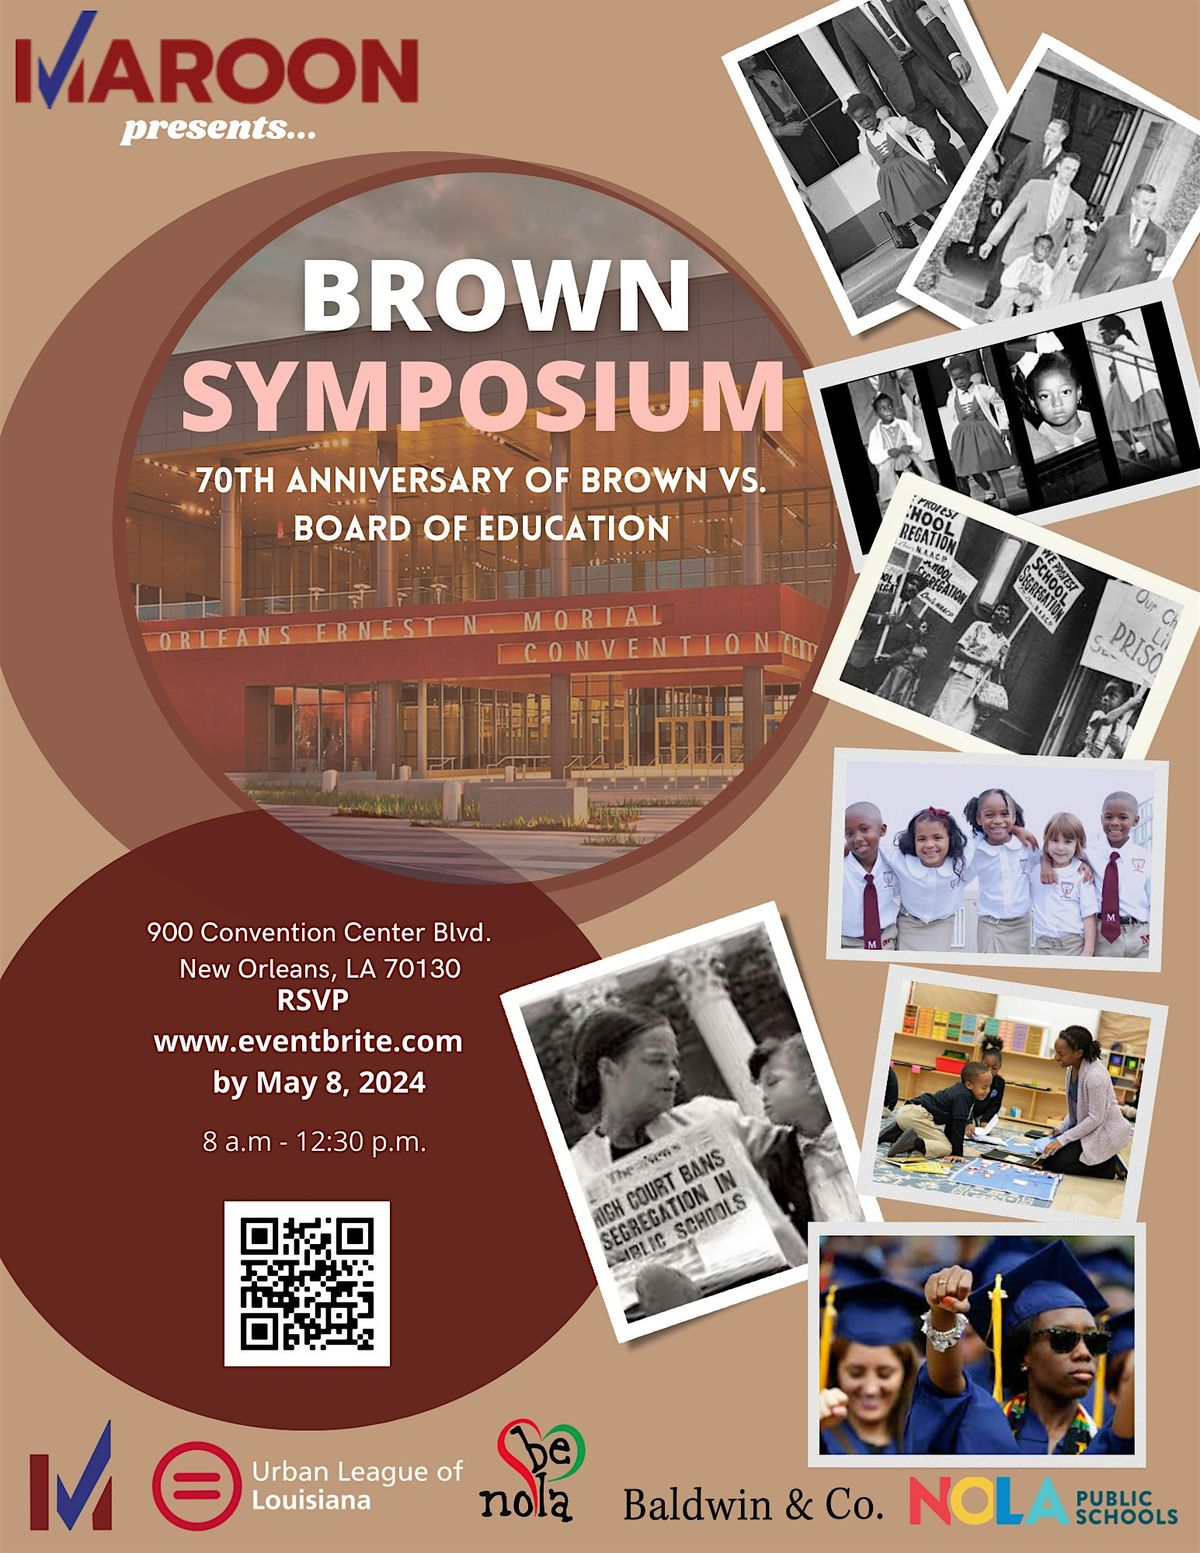 Maroon's Brown Symposium